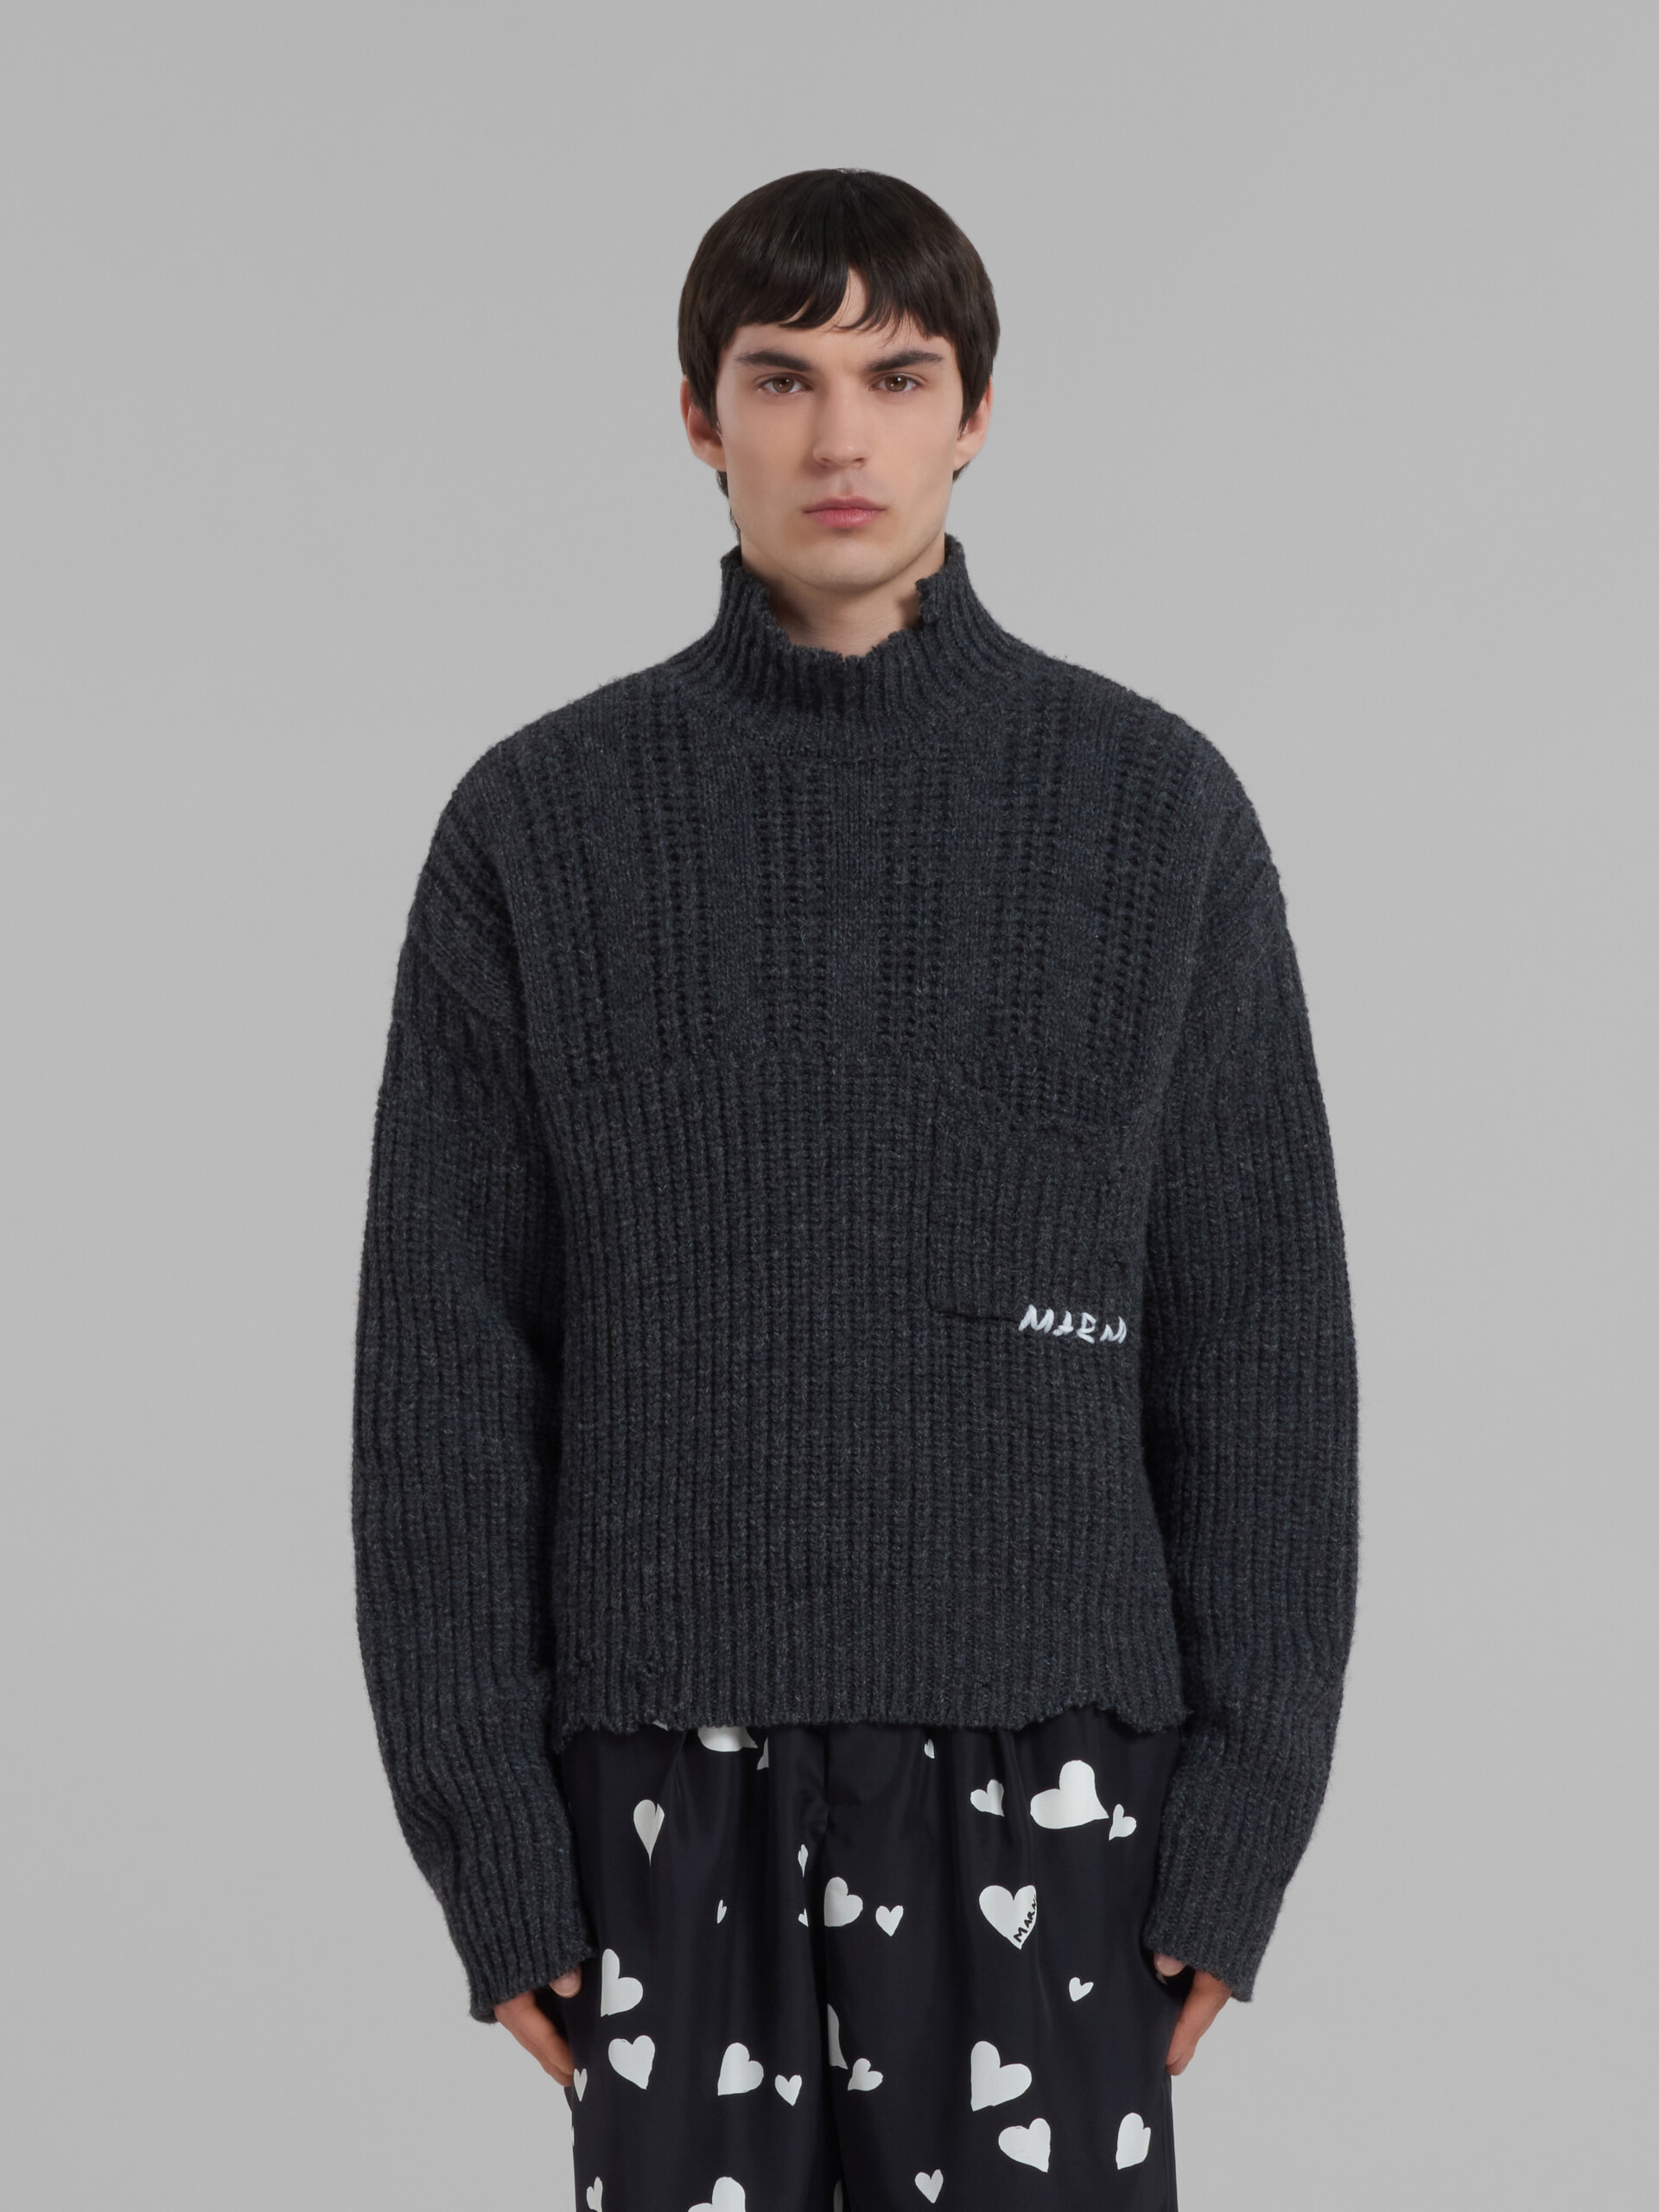 Jersey gris de lana virgen con bajo deshilachado - jerseys - Image 2